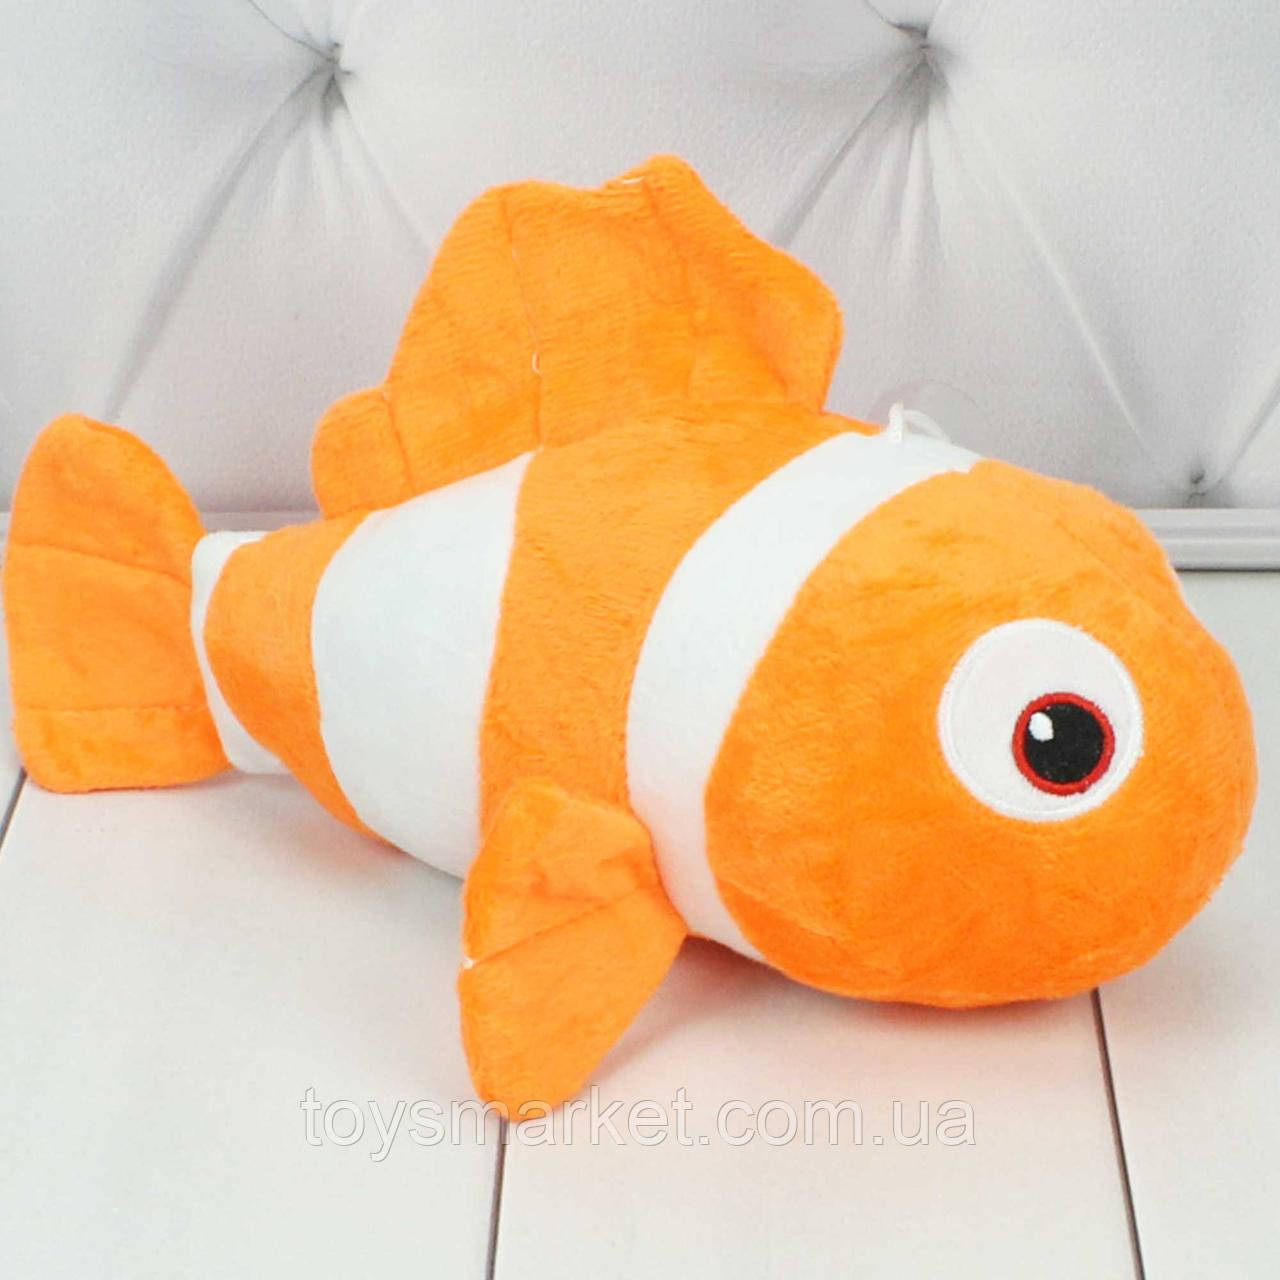 М’яка іграшка рибка Немо, 25 см.